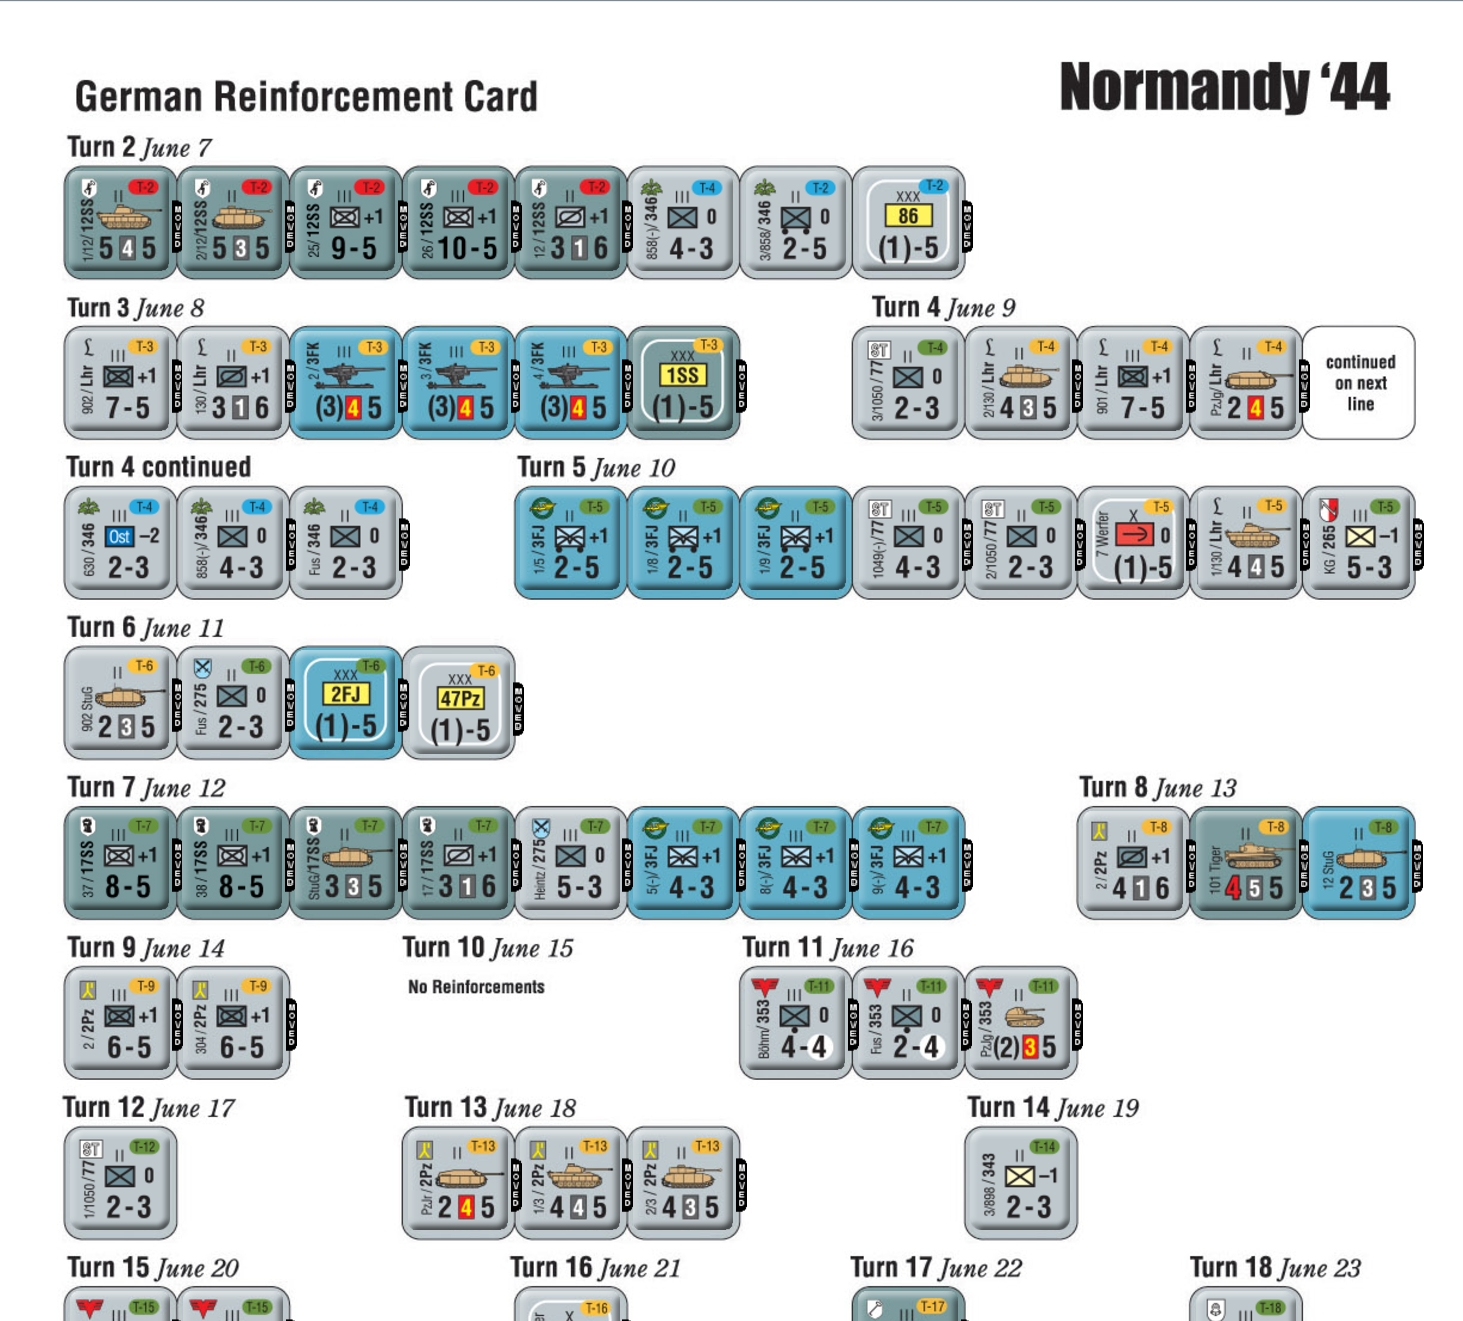 德軍的增援序列，顏色標誌與地圖上的進場方向顏色對應。12SS首當其衝。